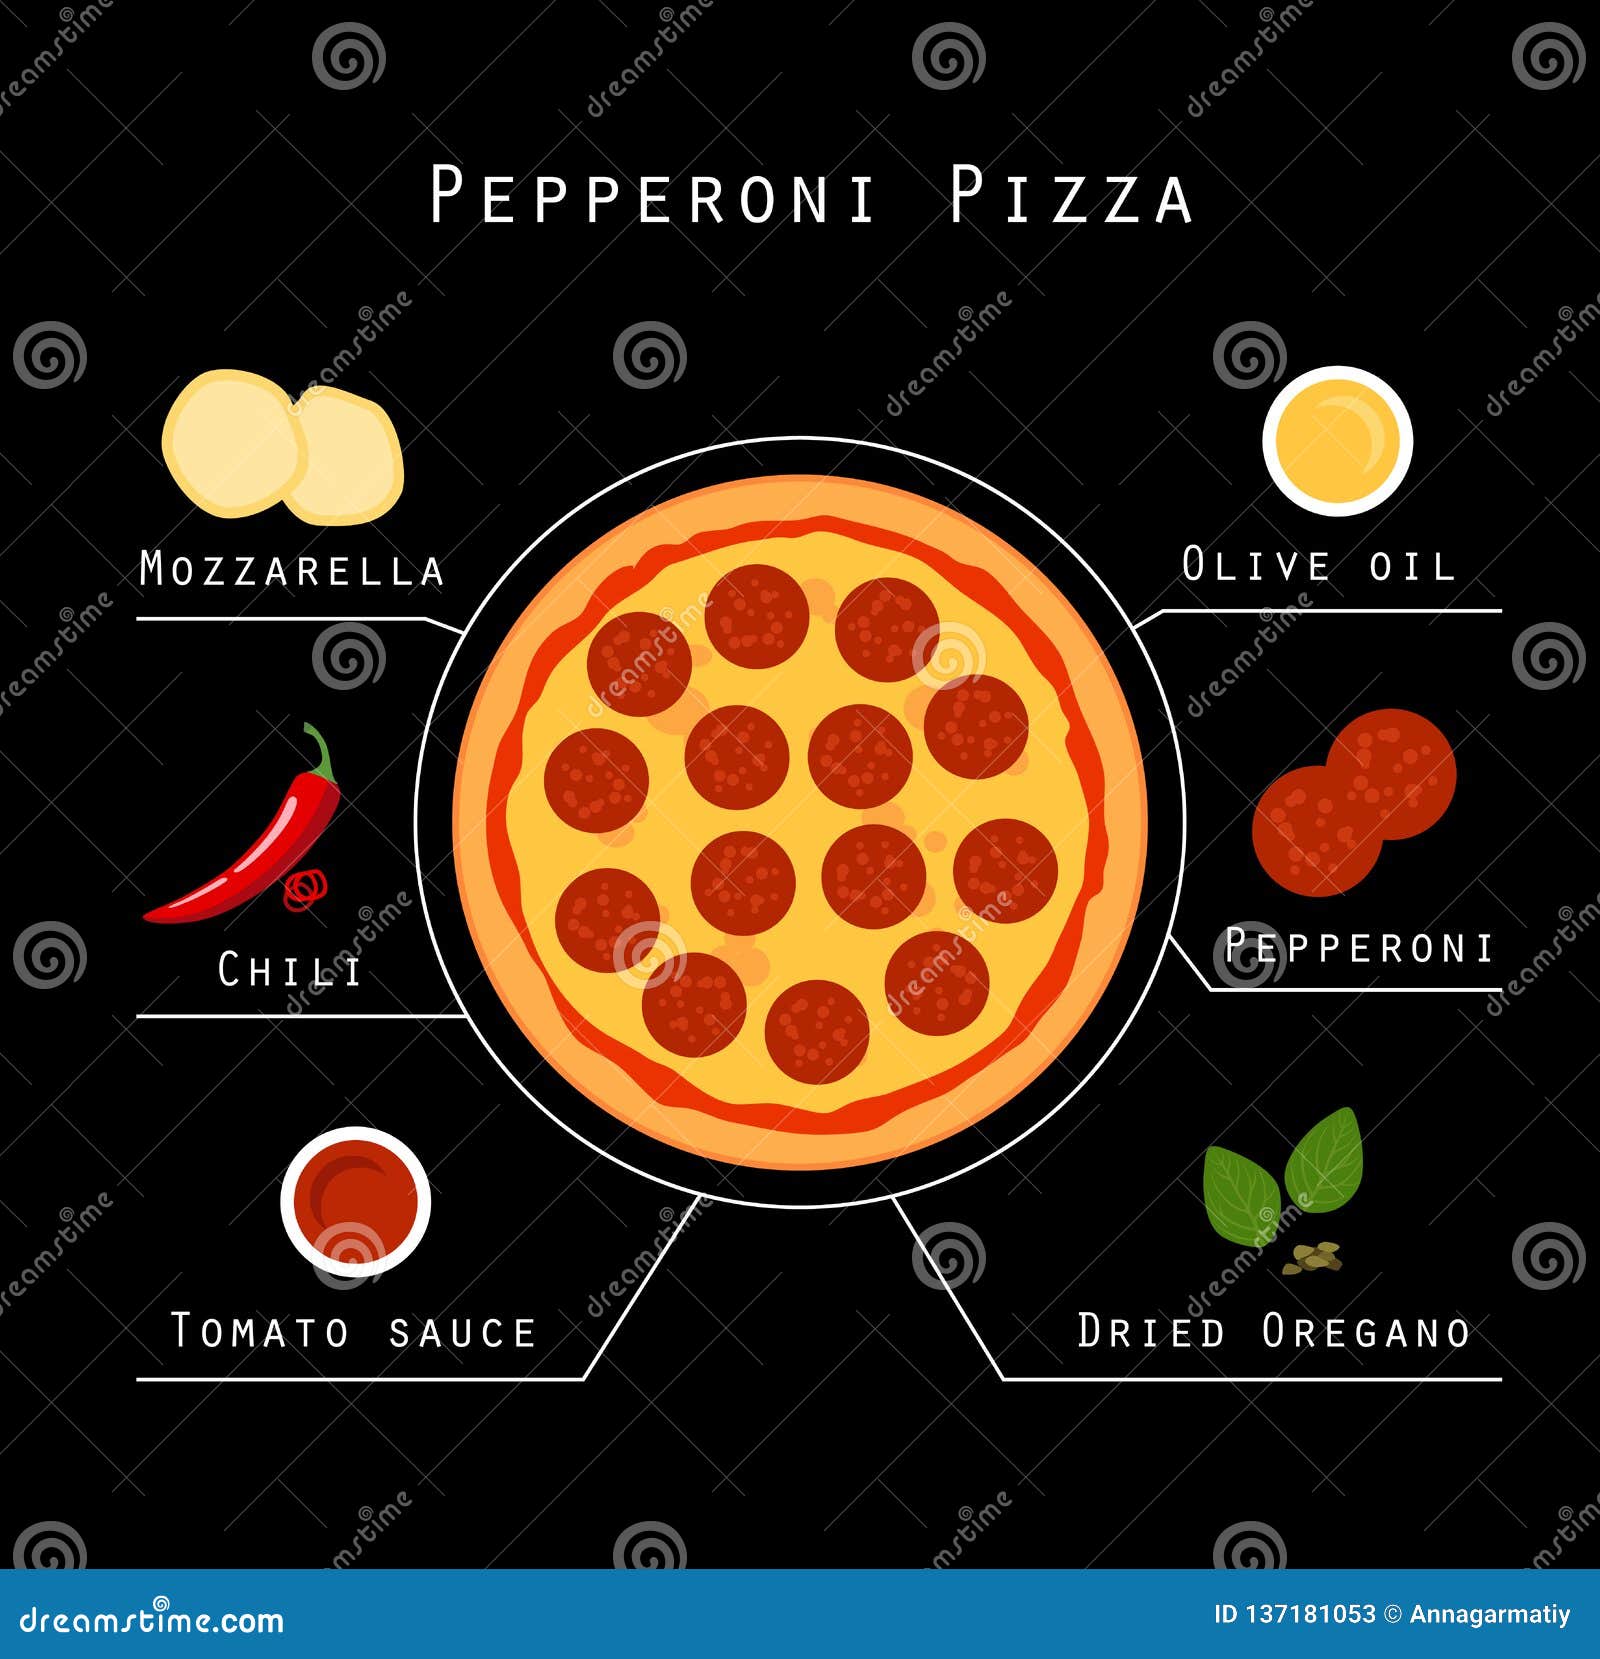 технологические карты для пиццы пепперони фото 104